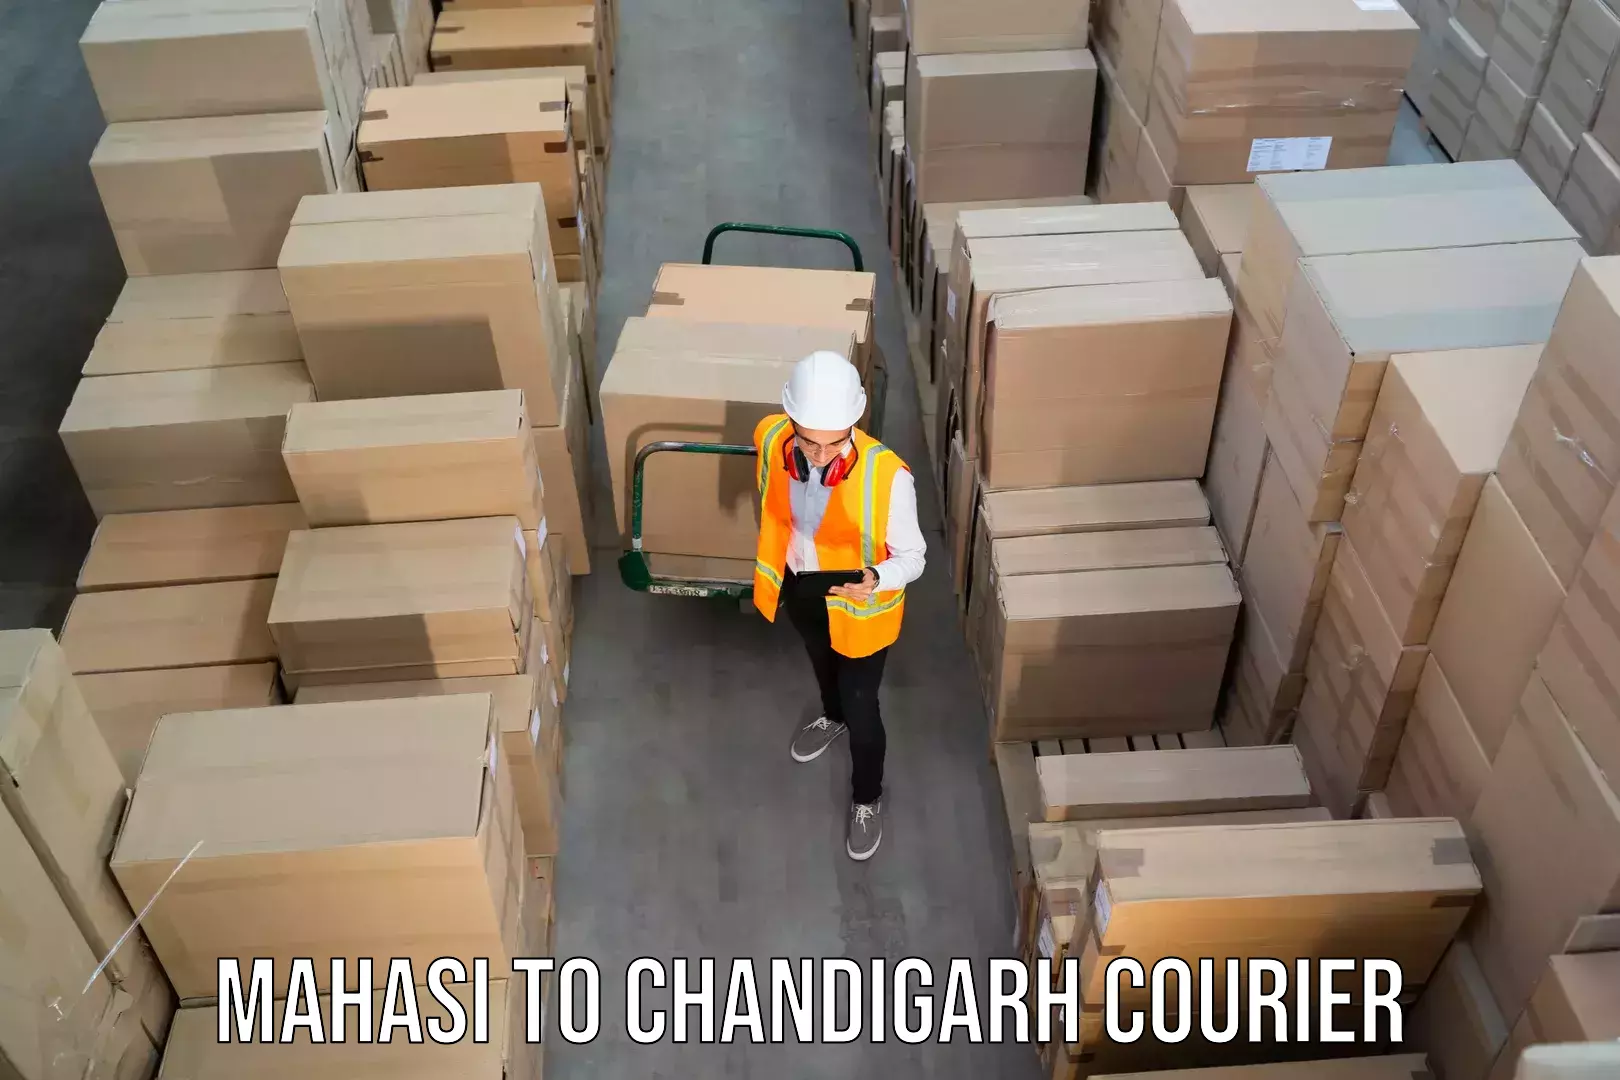 Pharmaceutical courier Mahasi to Chandigarh